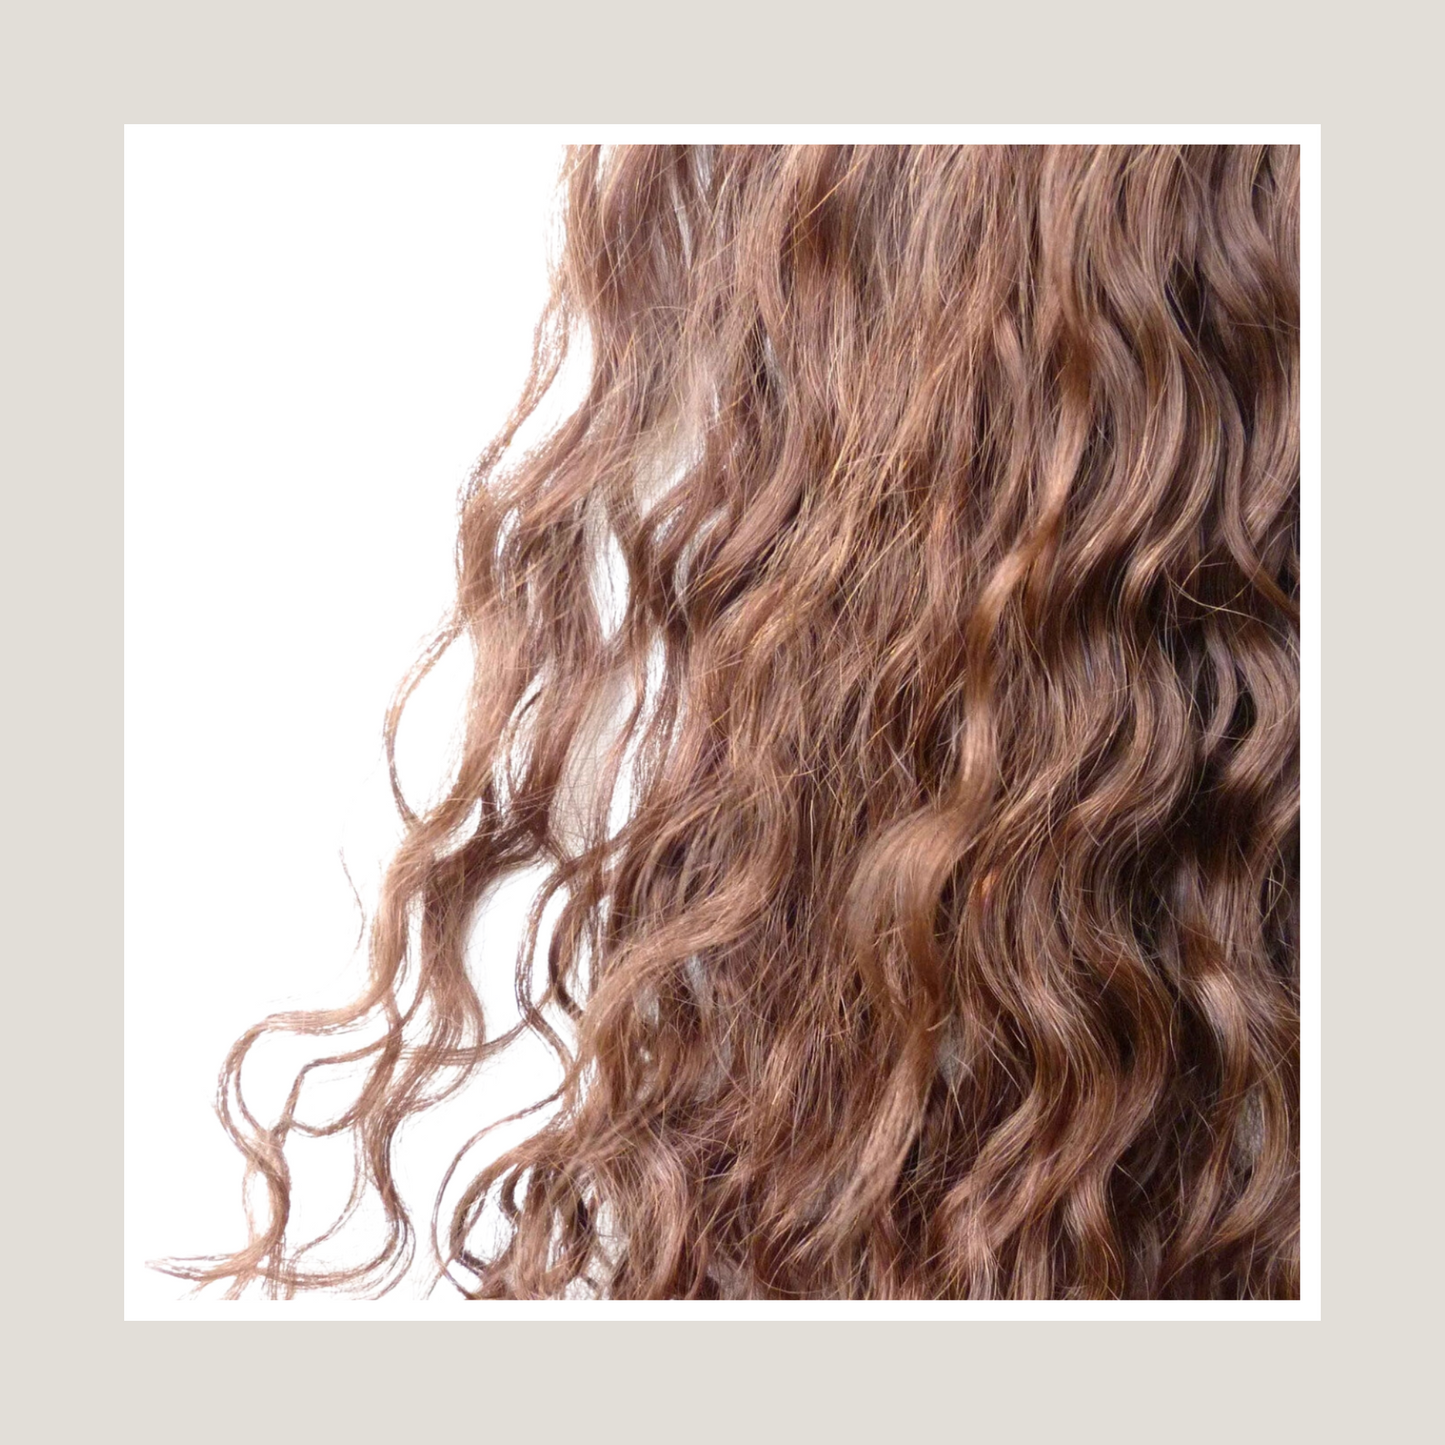 שיער אנושי של רמי בתולה אירופית, בתפזורת